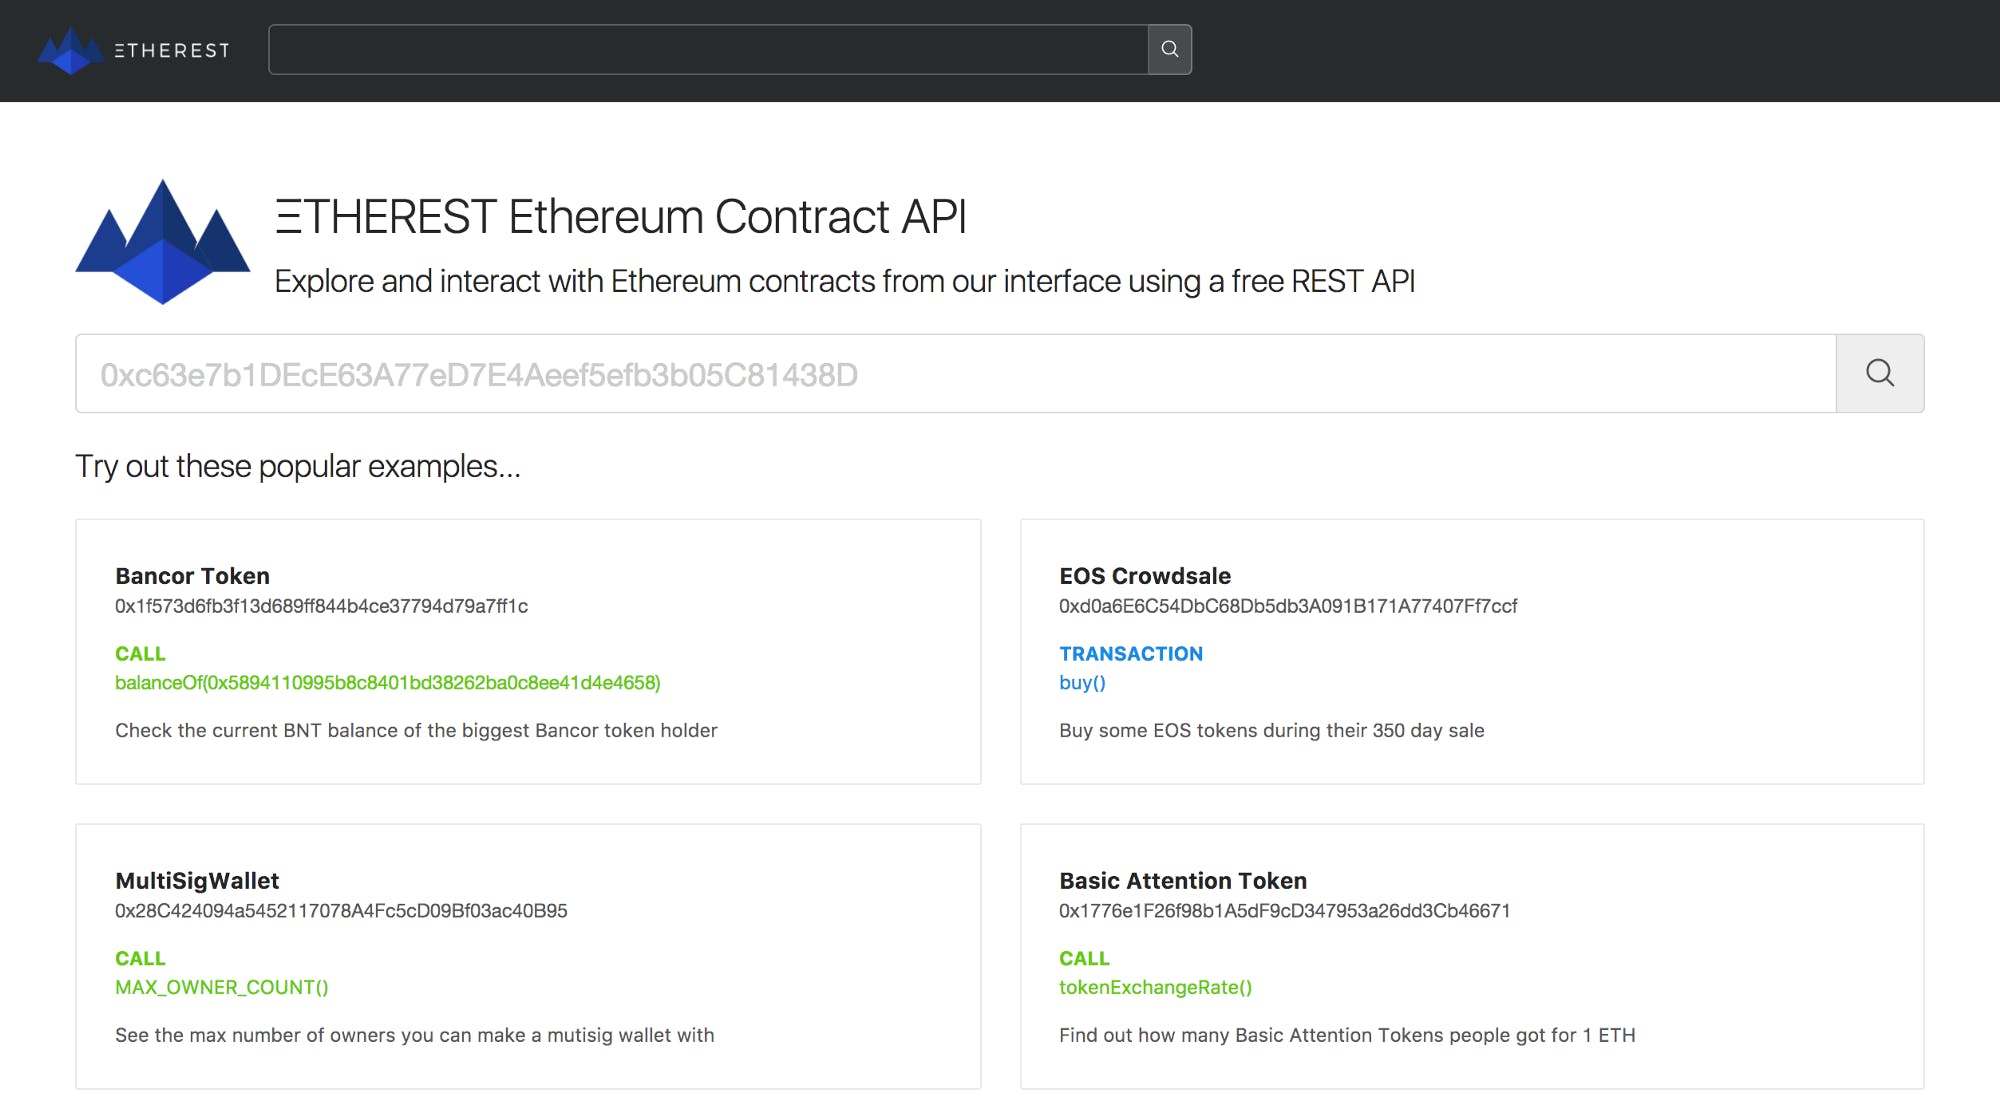 ΞTHEREST Ethereum Contract API media 1